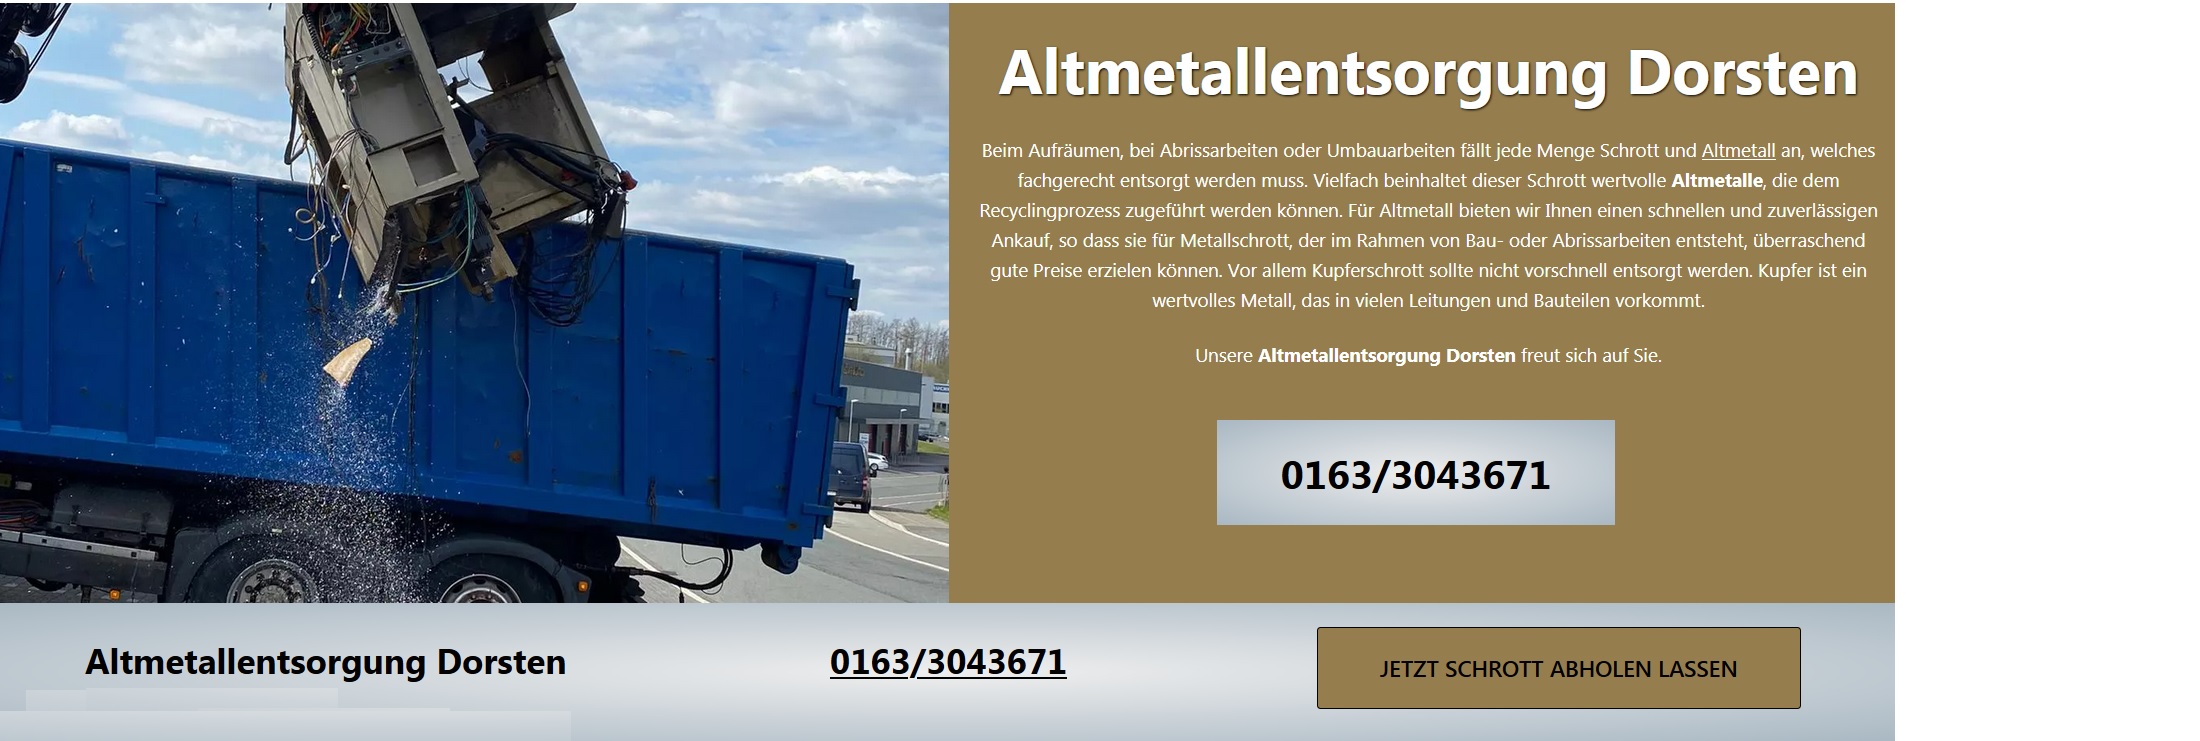 Schrottankauf Kerpen: Ihr mobiler Schrotthändler Wir entsorgen Schrott, Metall und Fahrzeuge,Kostenlos , Sofortige Barzahlung